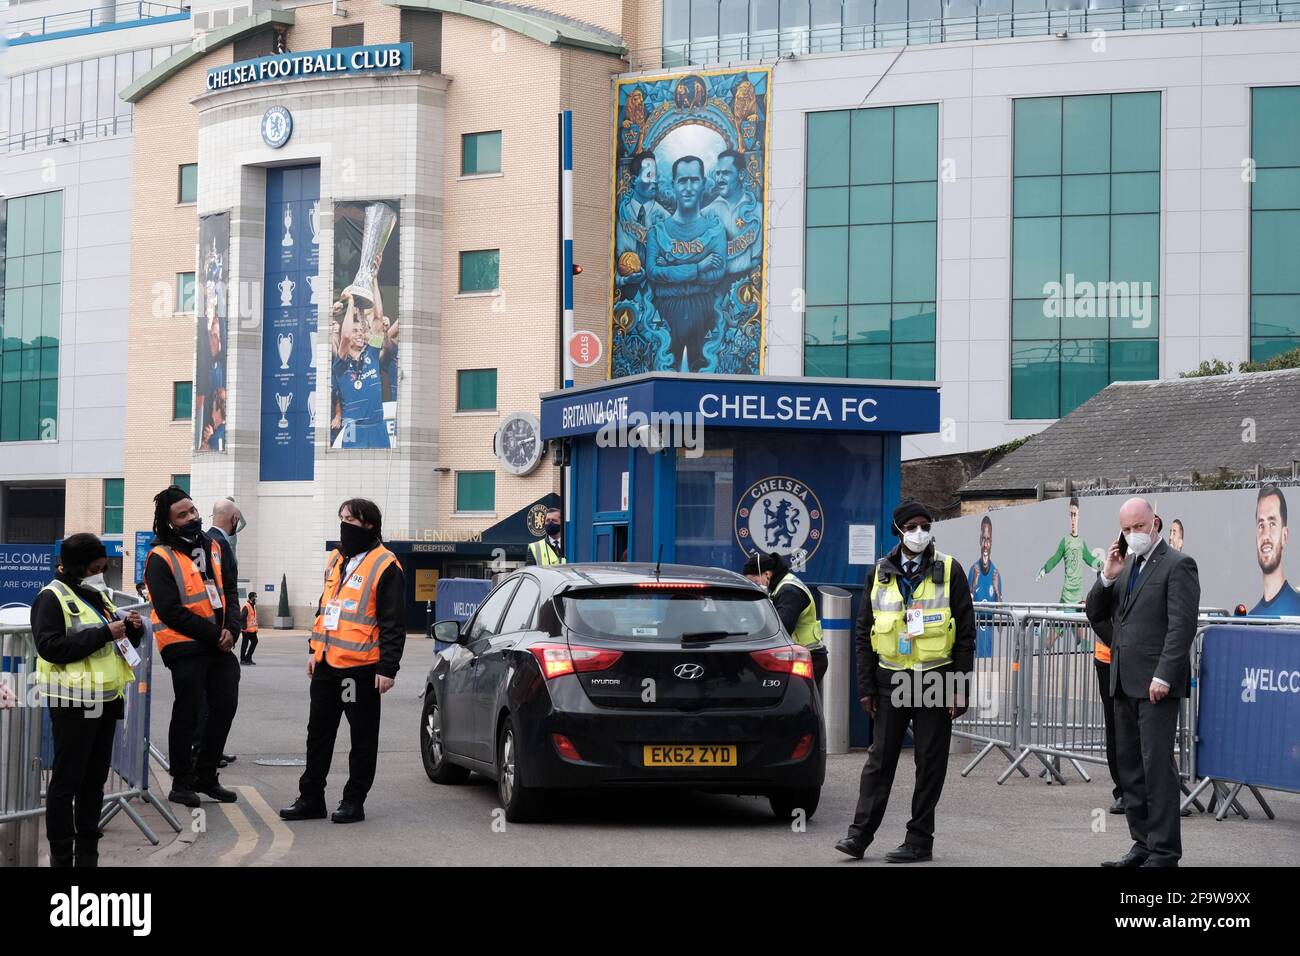 Außenansicht der Stamford Bridge am Spieltag, dem Heimstadion des Chelsea Football Club. Stockfoto